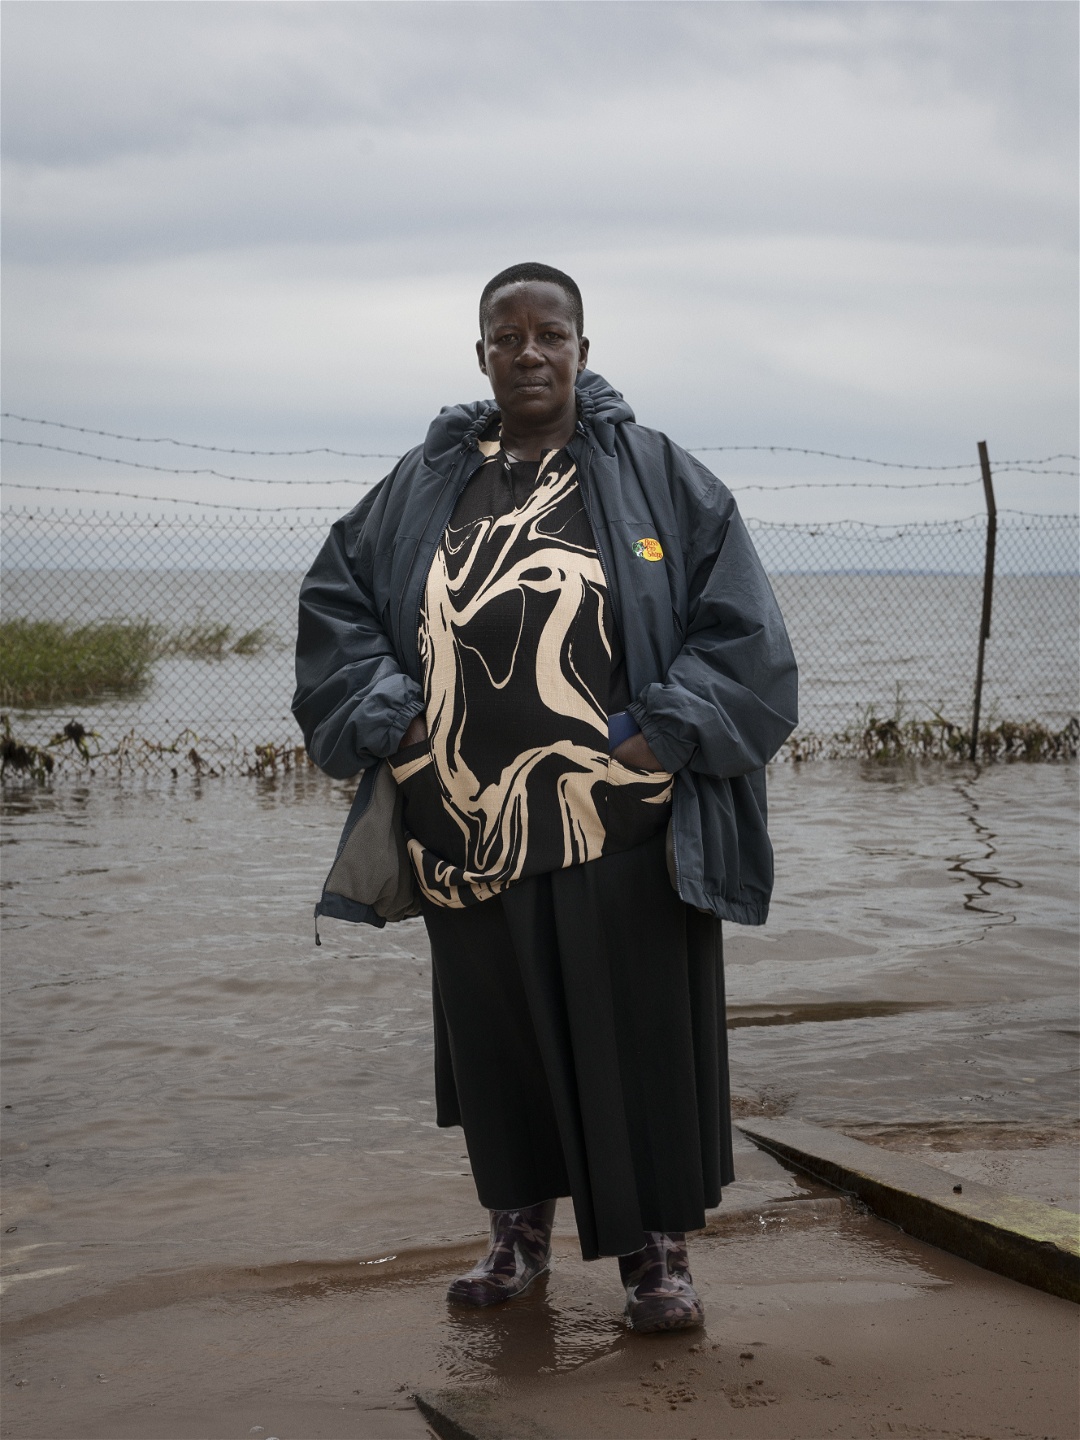 Foto: Johannes TegnerMama Sylvia, eller Gertrude Nabukeera som hon egentligen heter, är en av få kvinnor i fiskerinäringen i Uganda. Hon började i liten skala, först genom att fiska själv och sälja till lokala restauranger. I dag driver hon en framgångsrik verksamhet på ön Bugala och anställer omkrign hundra personer.